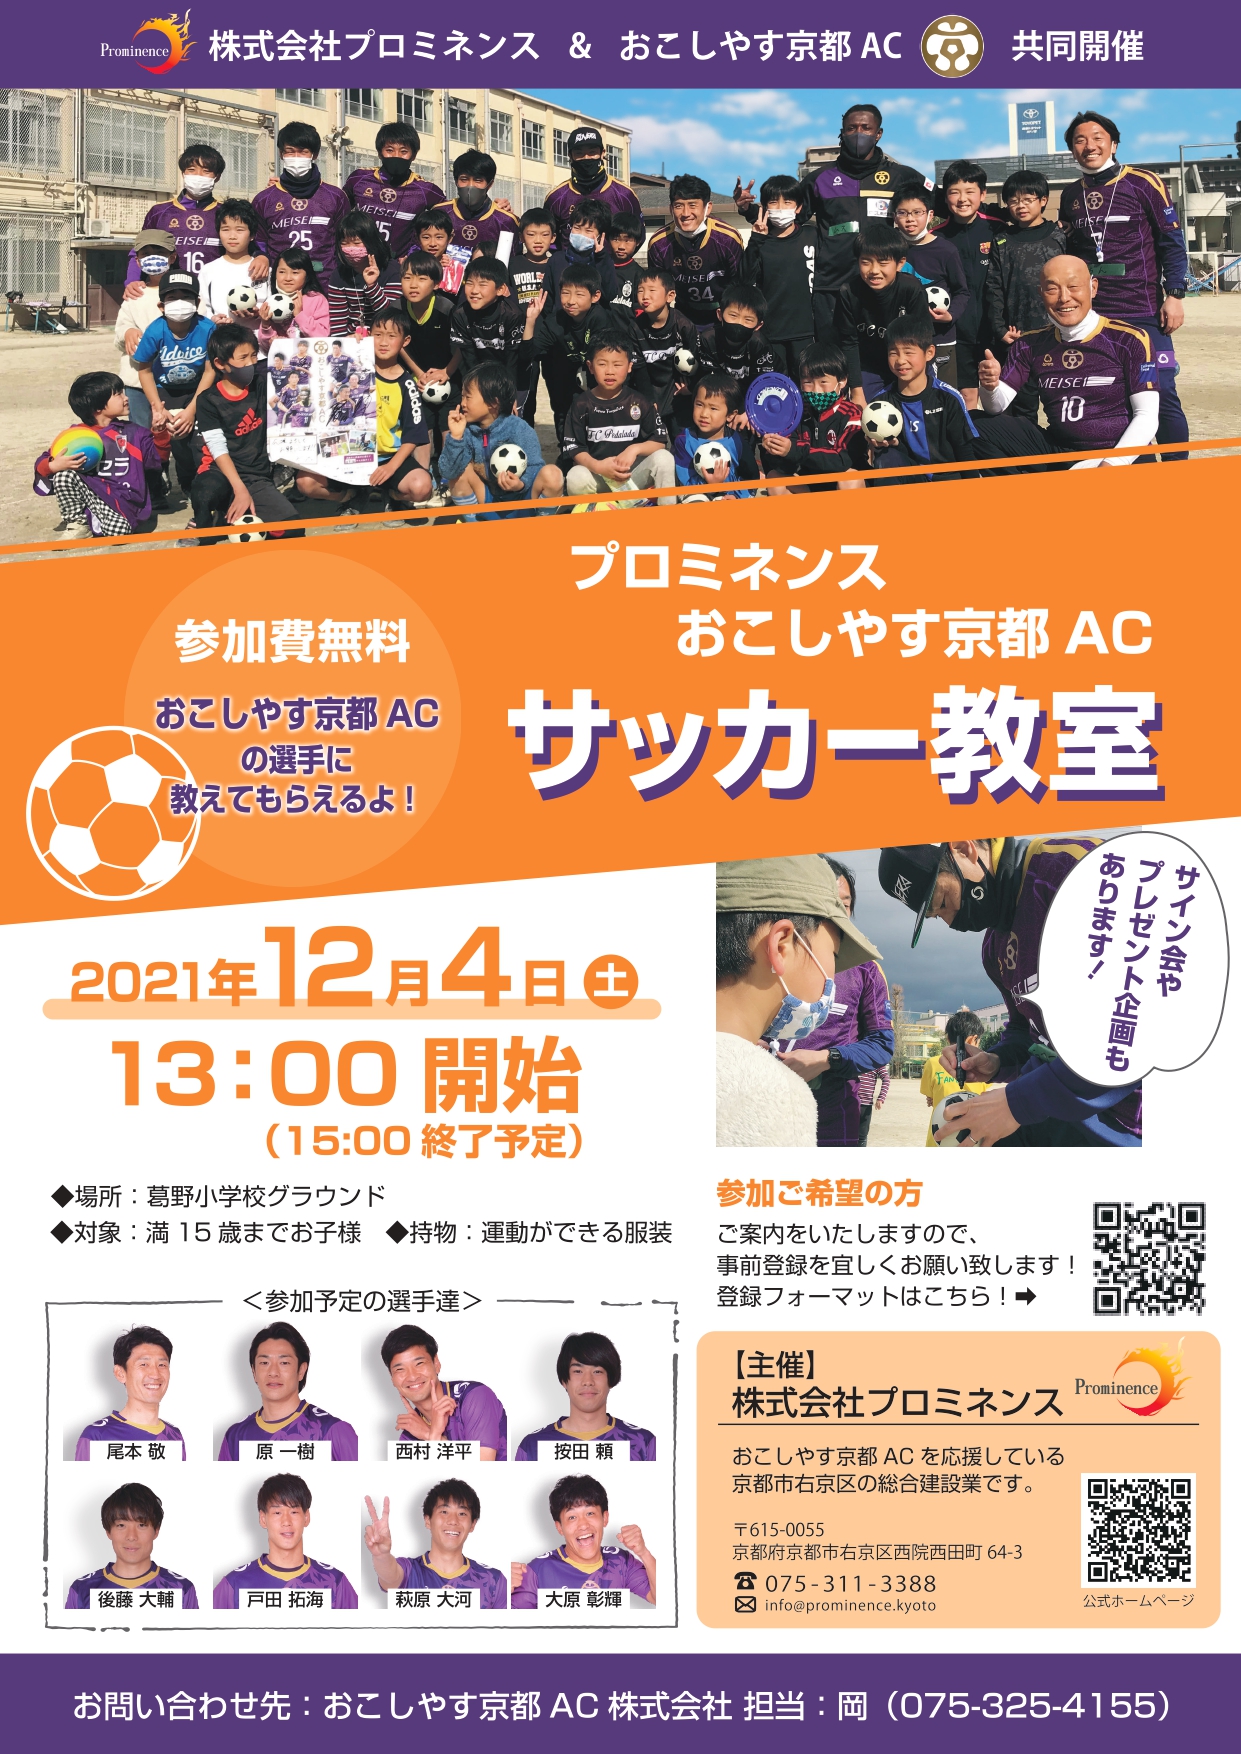 12 4 土 株式会社プロミネンス様主催 サッカー教室 開催のお知らせ おこしやす京都